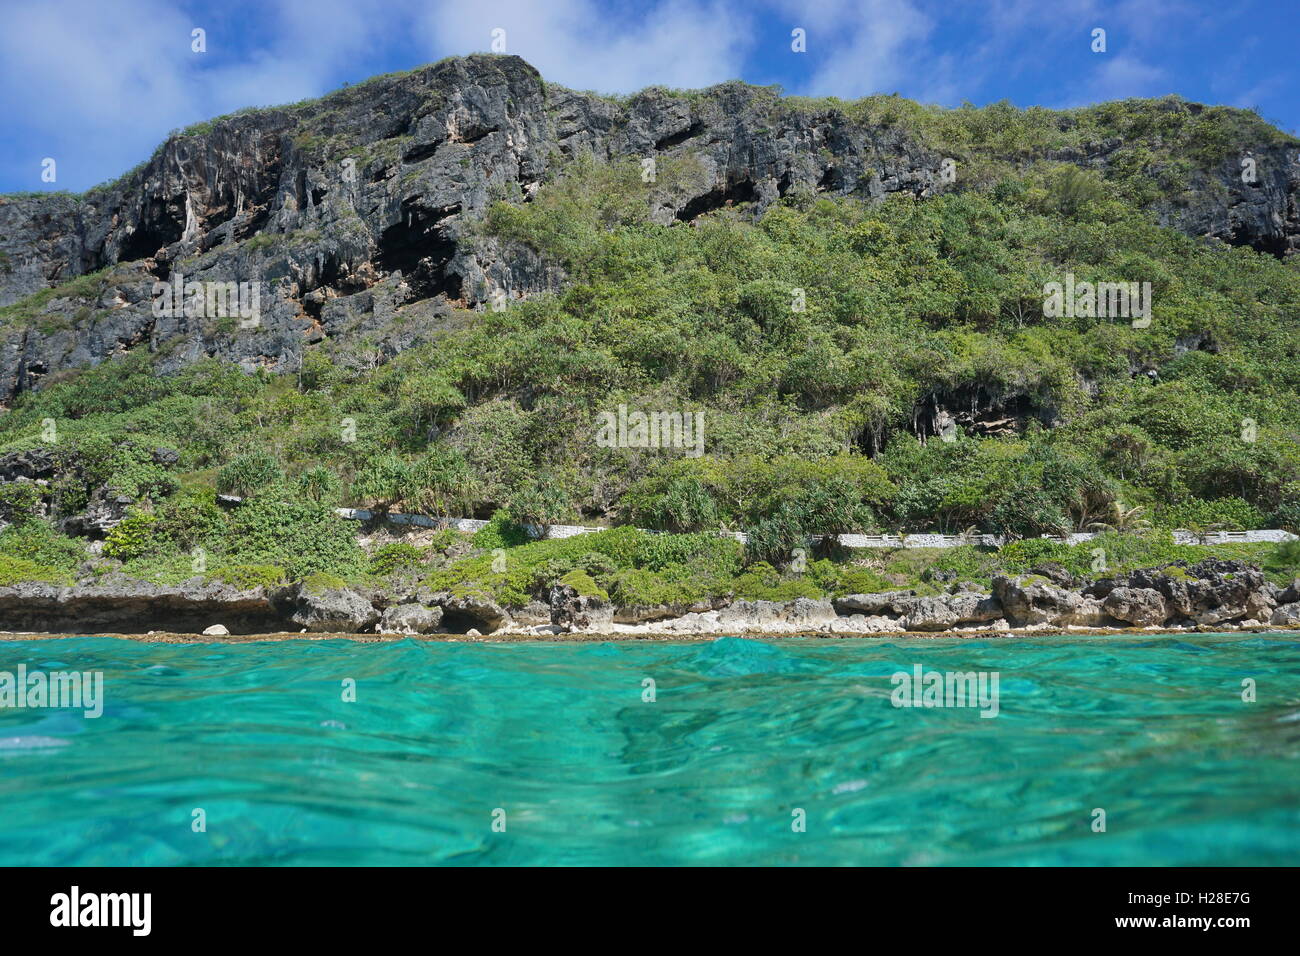 Küstenlandschaft, erodierte Kalksteinfelsen mit Vegetation von der Wasseroberfläche, Pazifik, Rurutu Island gesehen Stockfoto